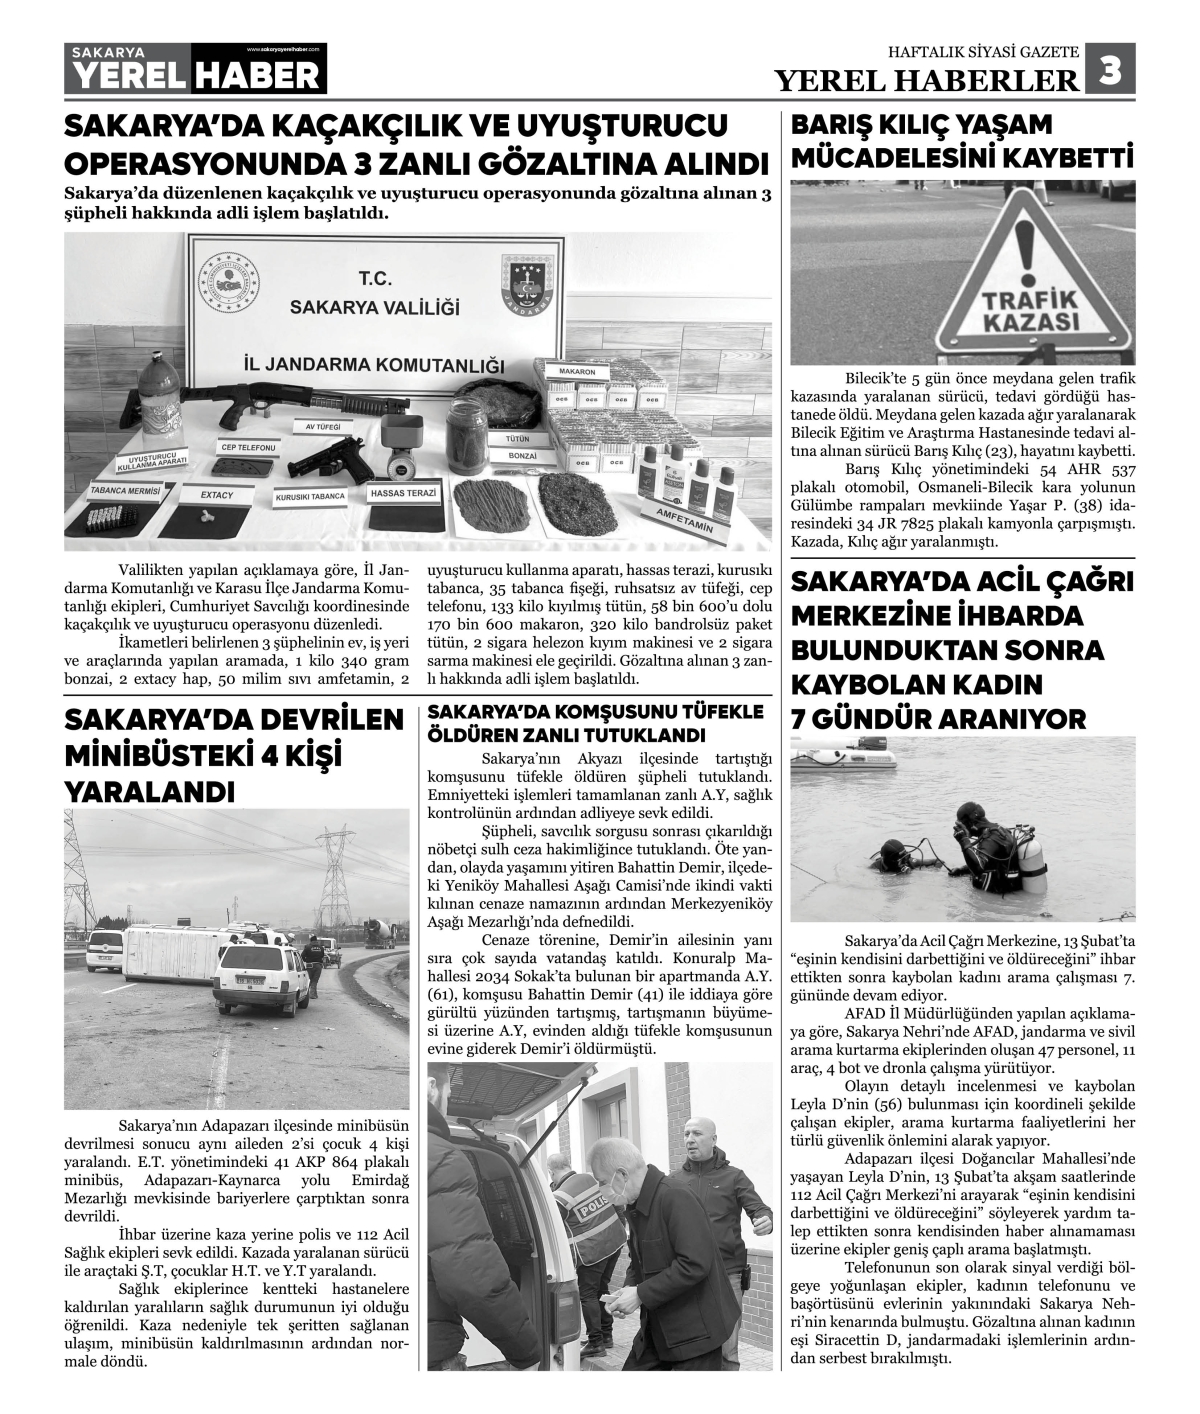 Sakarya Yerel Haber Gazetesi 43. Sayısı Çıktı